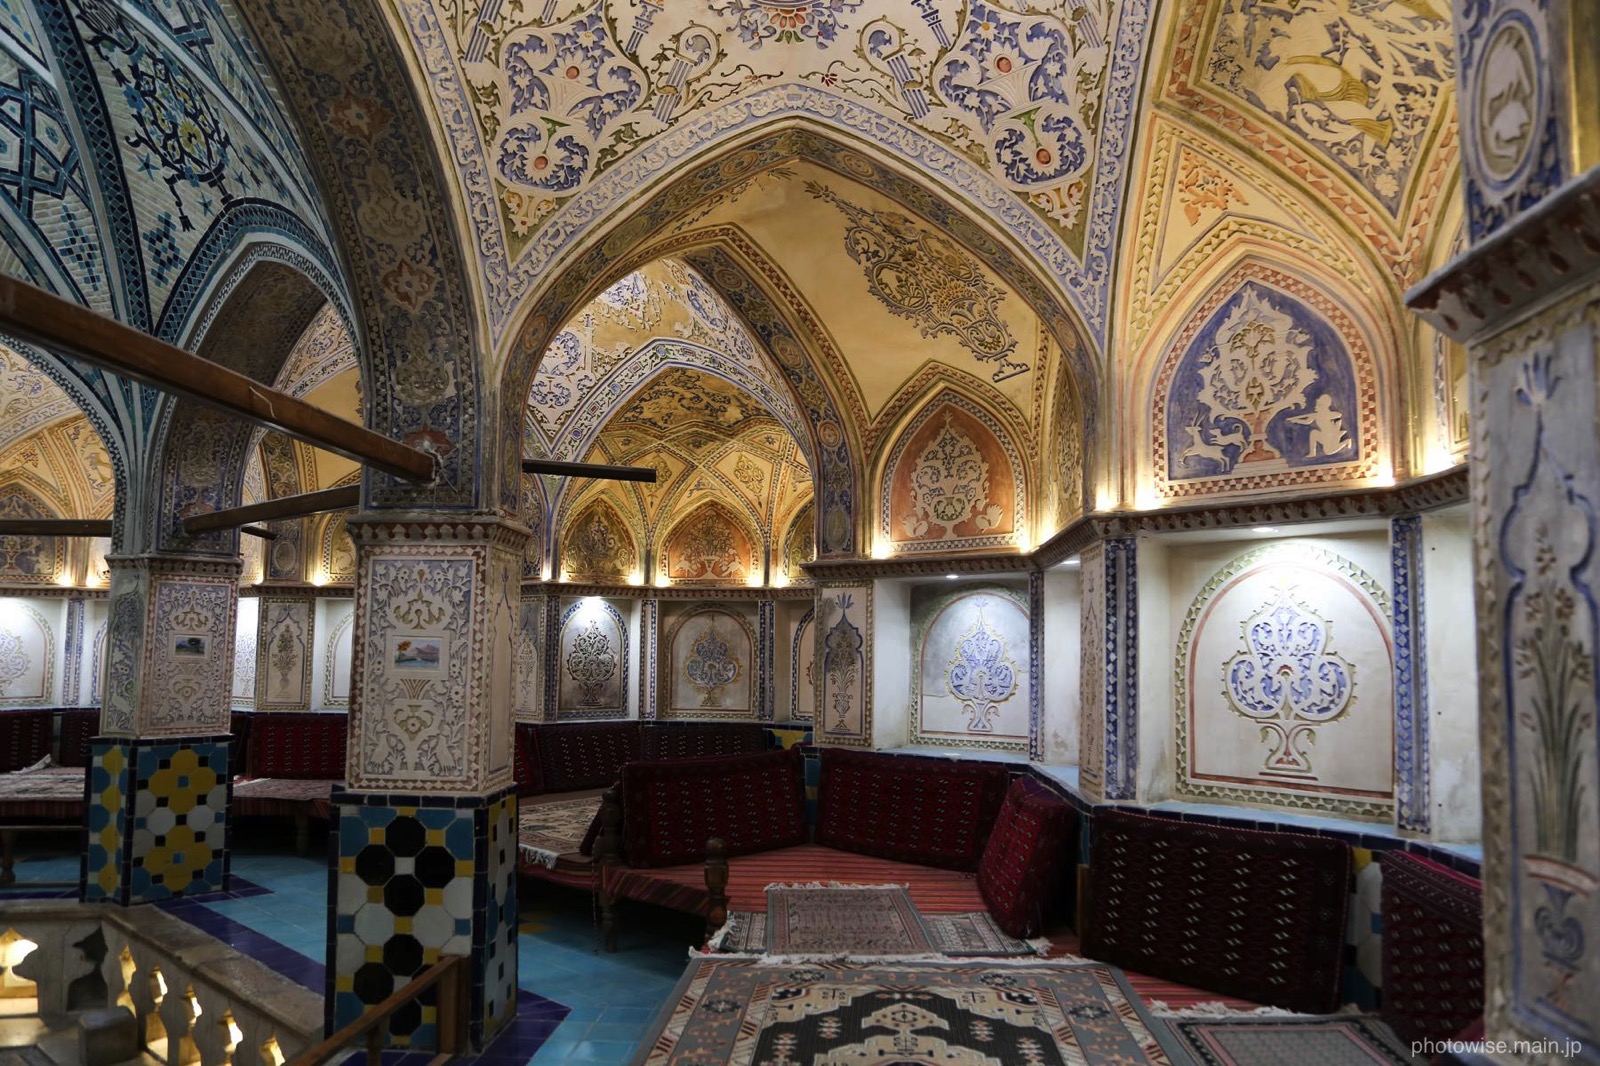  Sultan Amir Ahmad Bathhouse